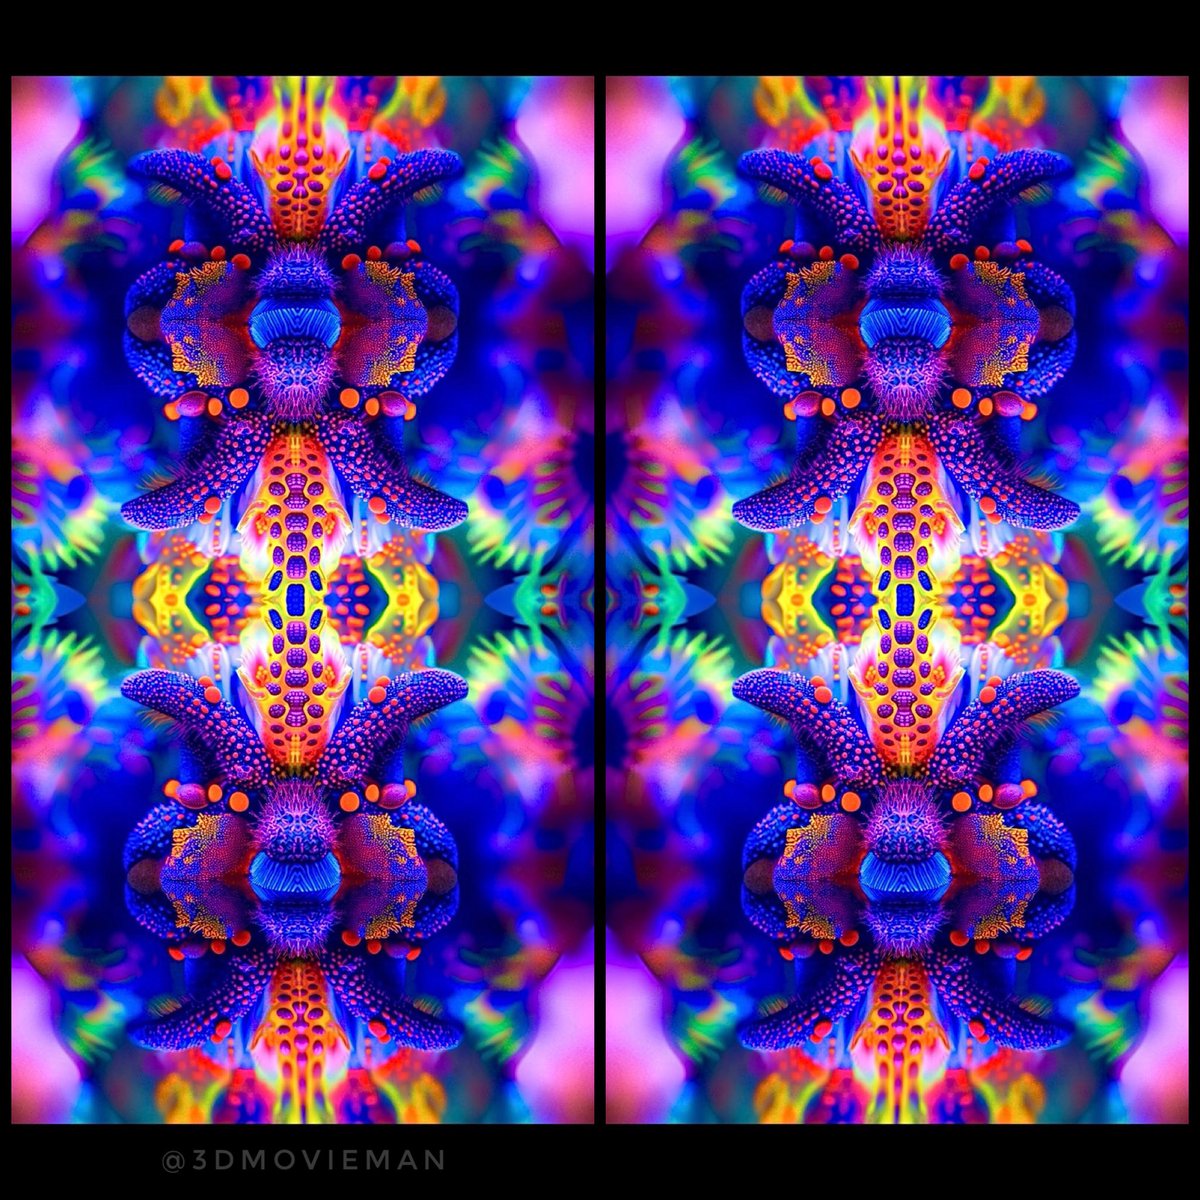 Vivid #stereoscopic AI #fractalart 

#stereoscopy #midjourneyV6 #digitalart #synthography #stereogram #aiarts